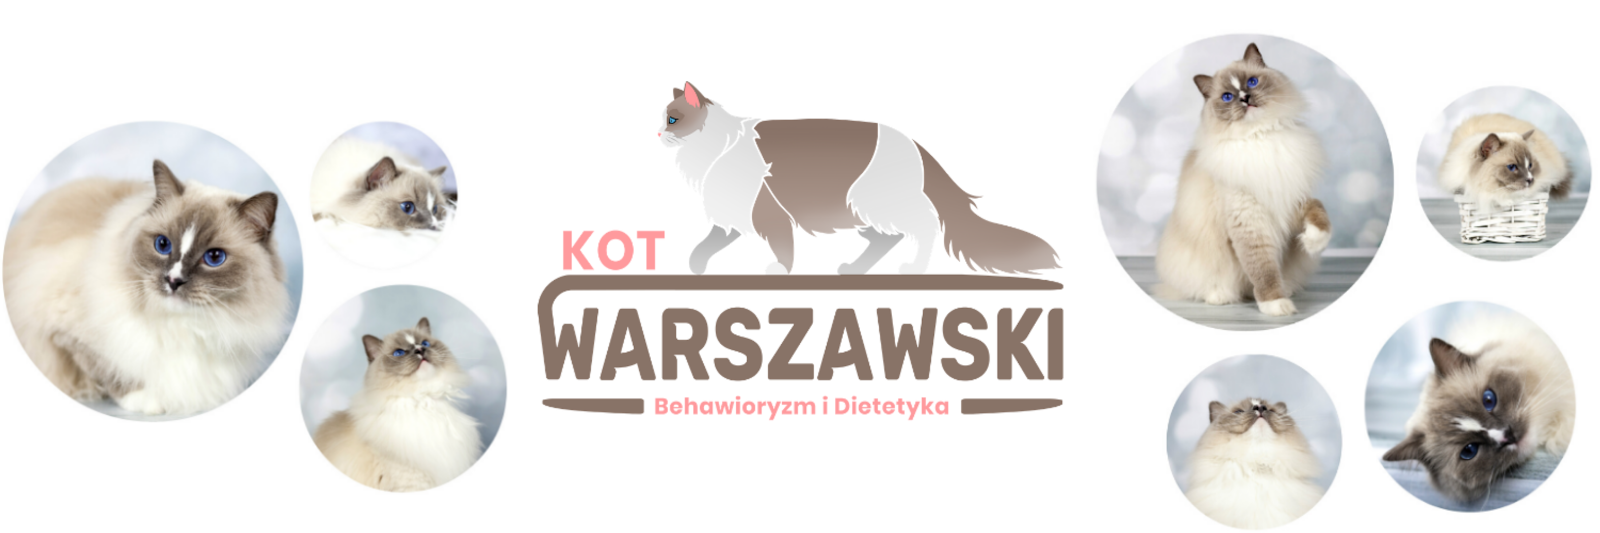 Kot Warszawski